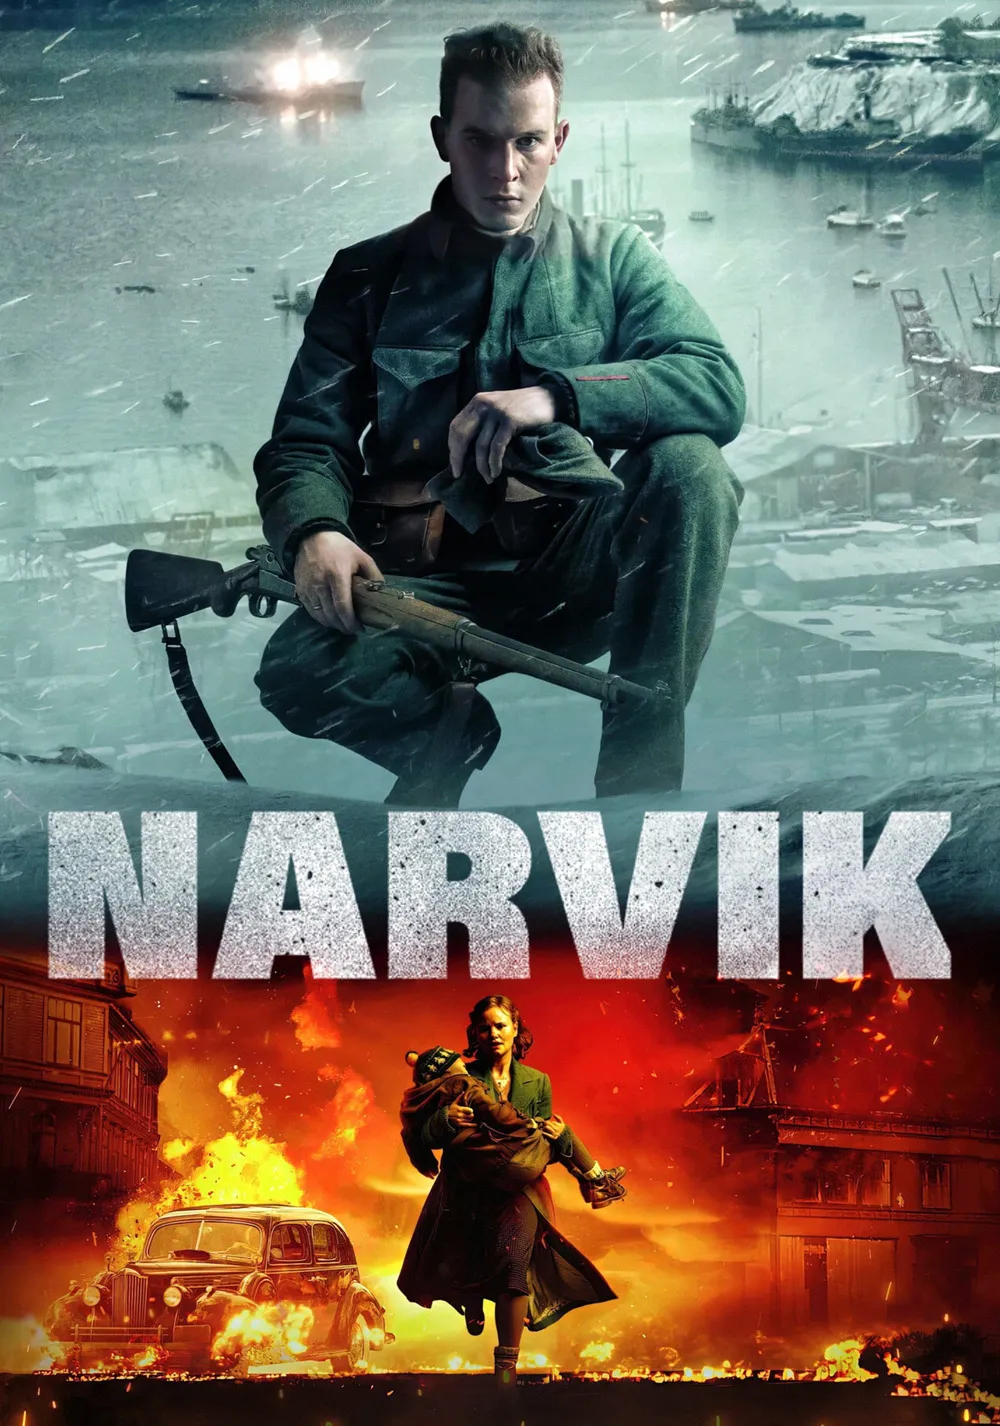 ดูหนังใหม่ NETFLIX Narvik 2022 นาร์วิค doomovie-hd